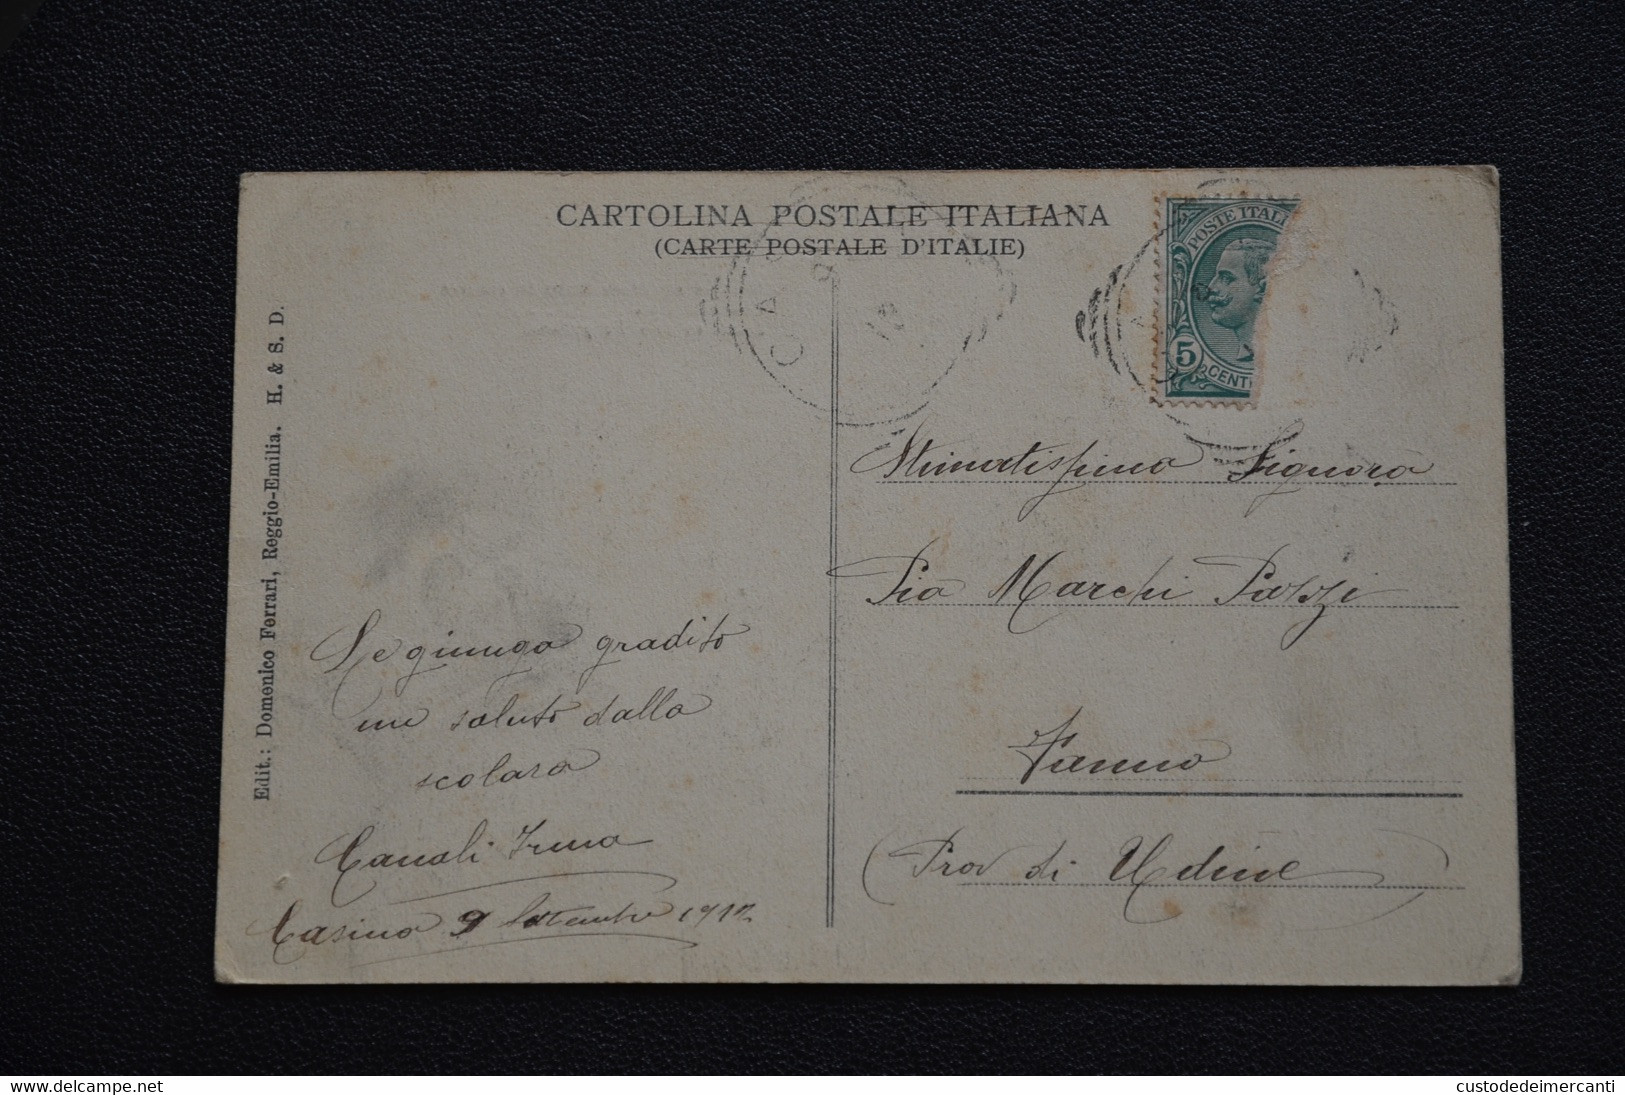 CARTOLINA REGGIO EMILIA CASTELNUOVO MONTI BAGNOLO PIETRA DI BISMANTOVA VERSI DANTE VG 1913 - Reggio Emilia